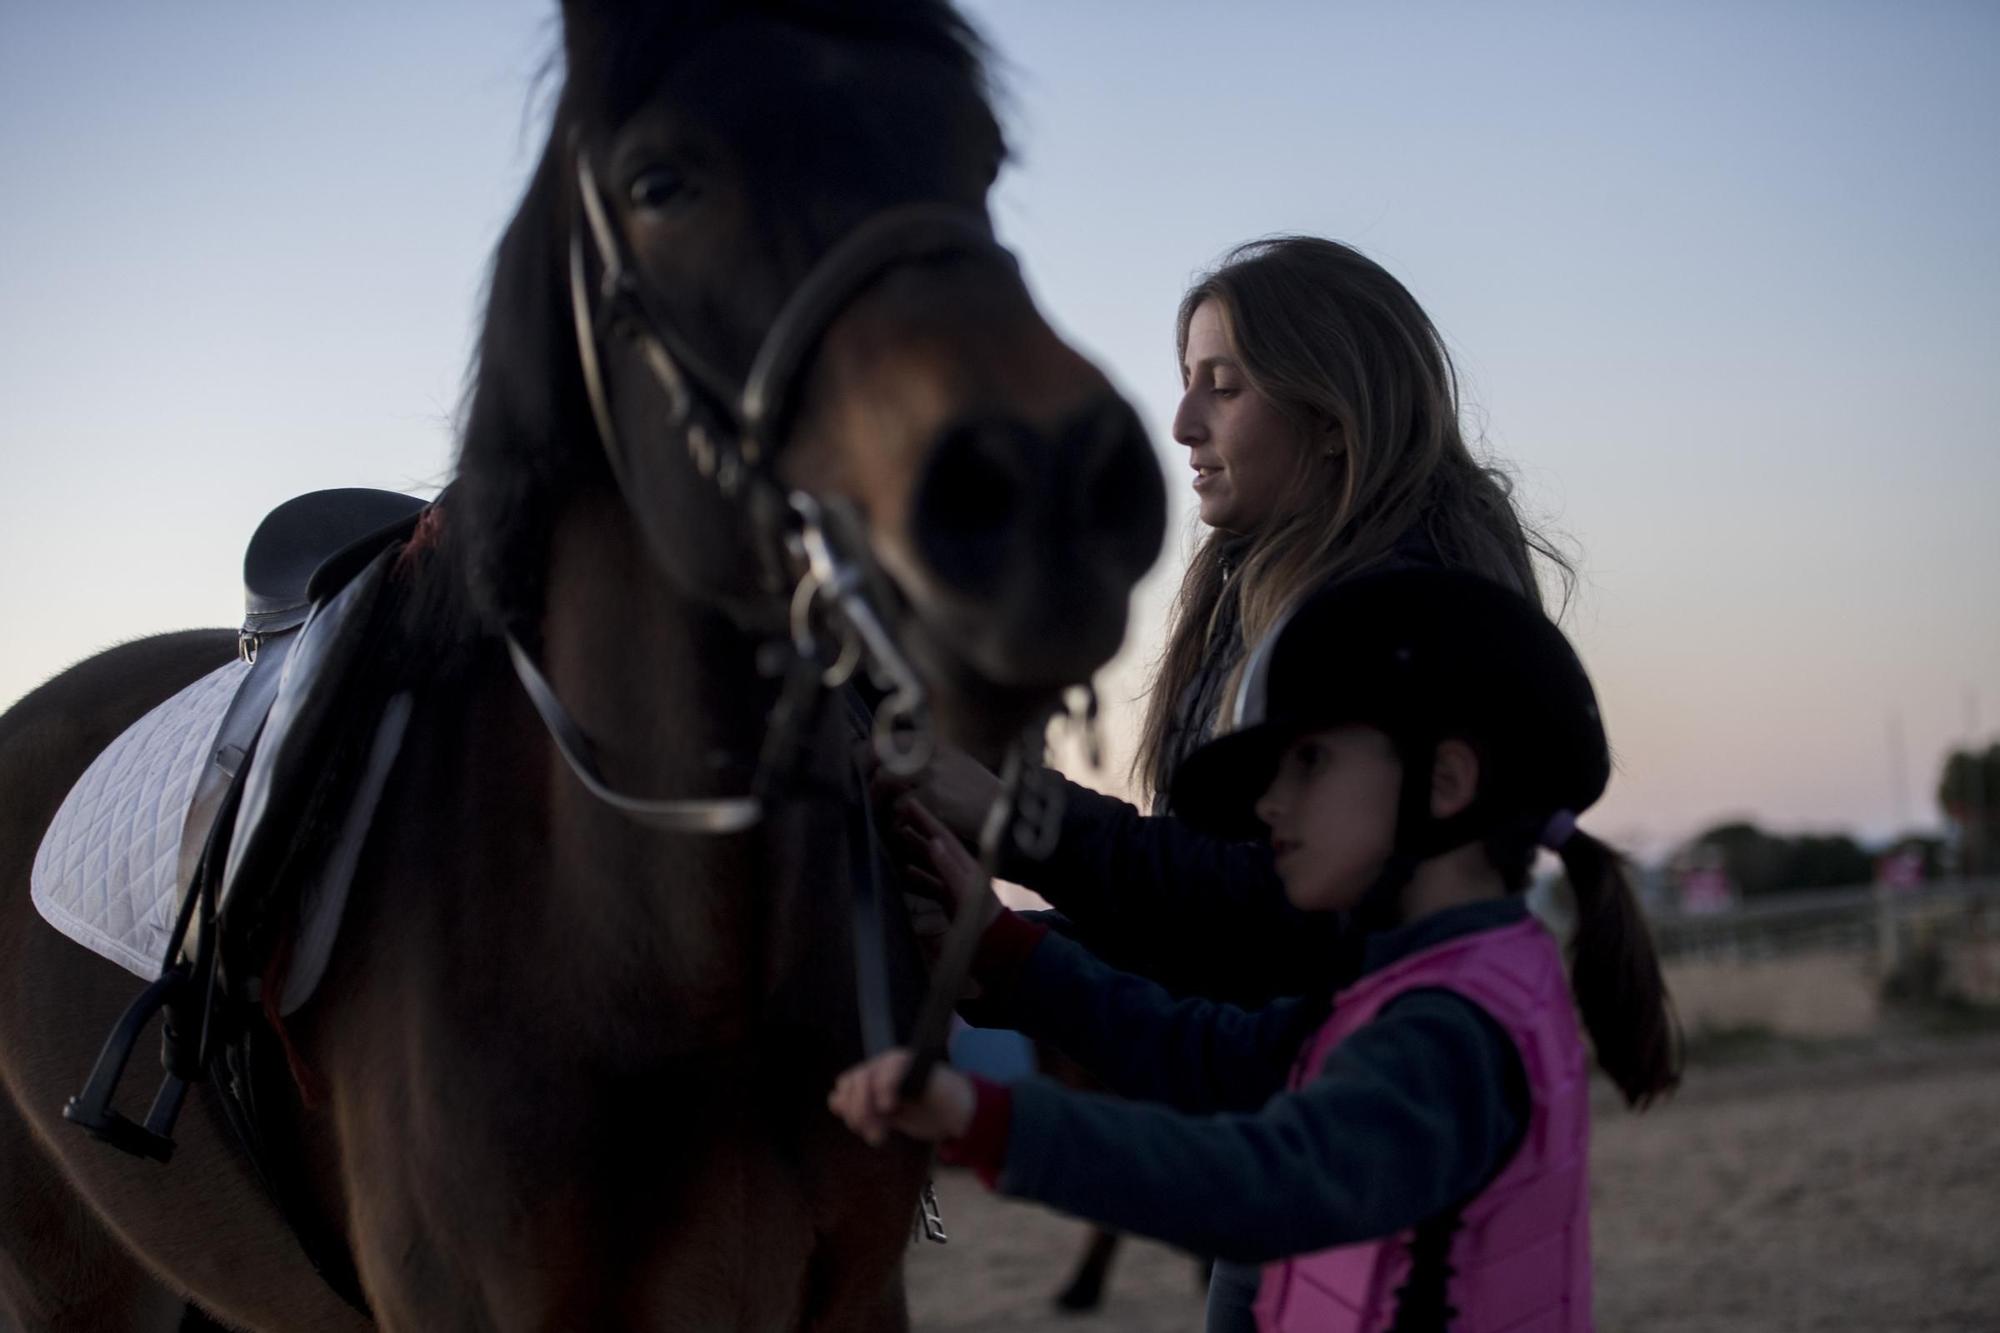 GALERÍA. Niños compitiendo a lomos de caballos, una pasión que crece